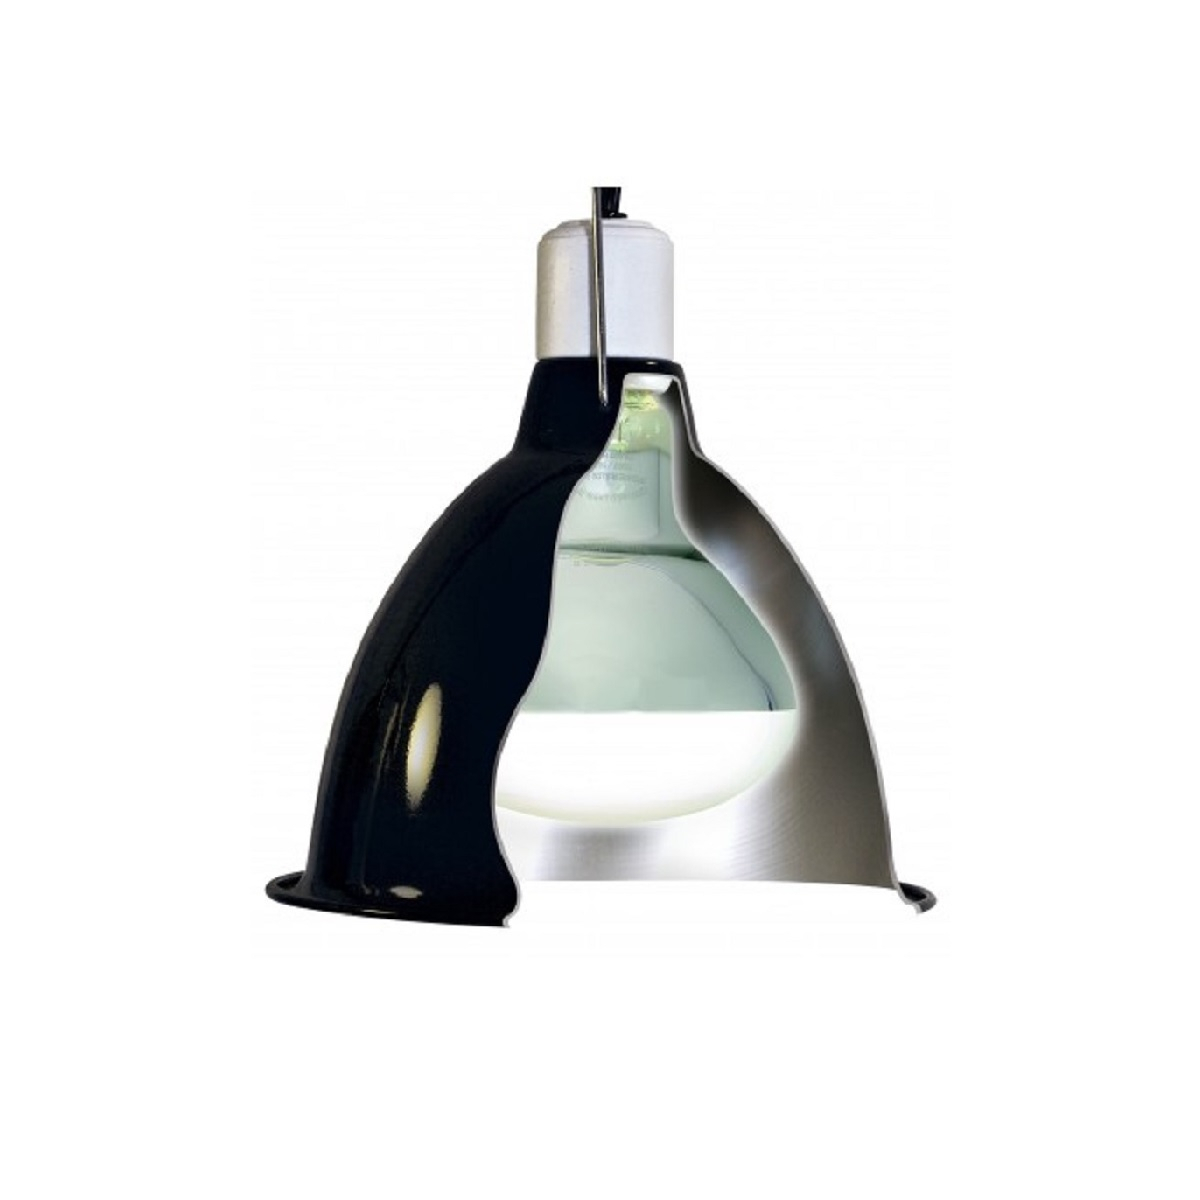 Support de lampe en céramique avec réflecteur ZooMed 